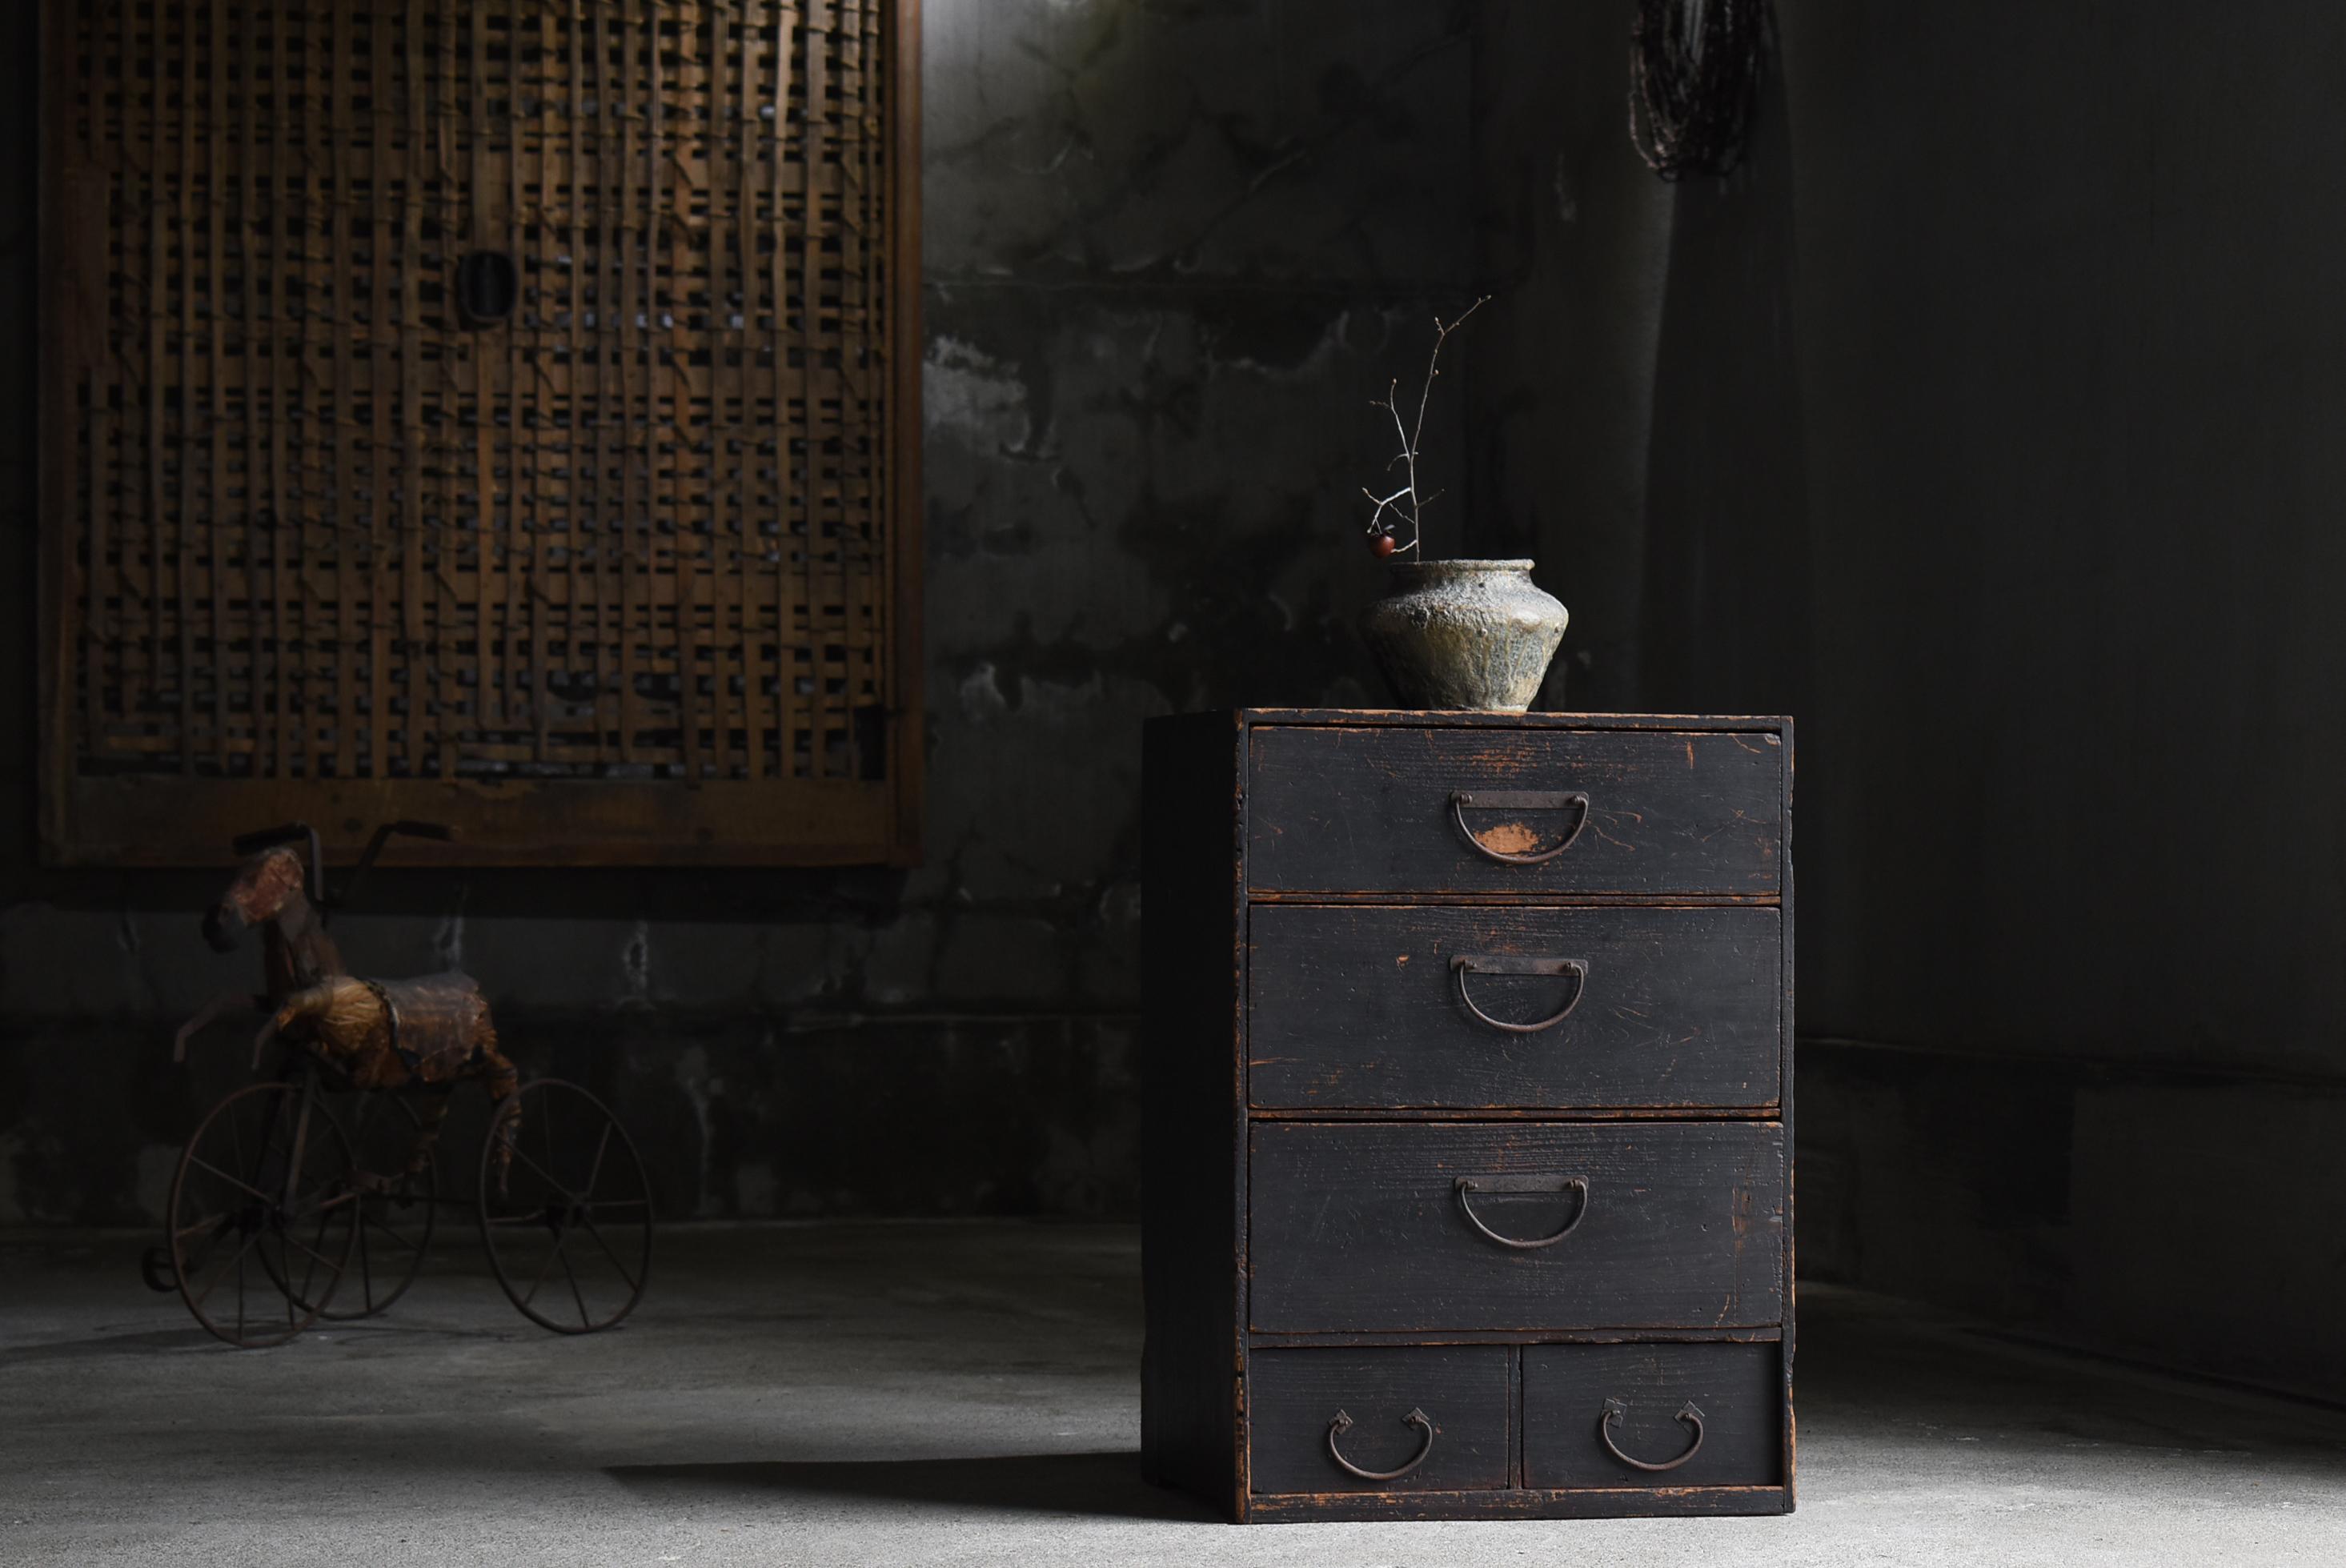 
Très vieux tiroir de rangement noir japonais.
Le mobilier date de la période Meiji (1860-1900).
Le matériau utilisé est le bois de cèdre.
Les poignées sont en fer.

Le design est simple et épuré.
Il s'agit d'un très beau meuble d'une simplicité